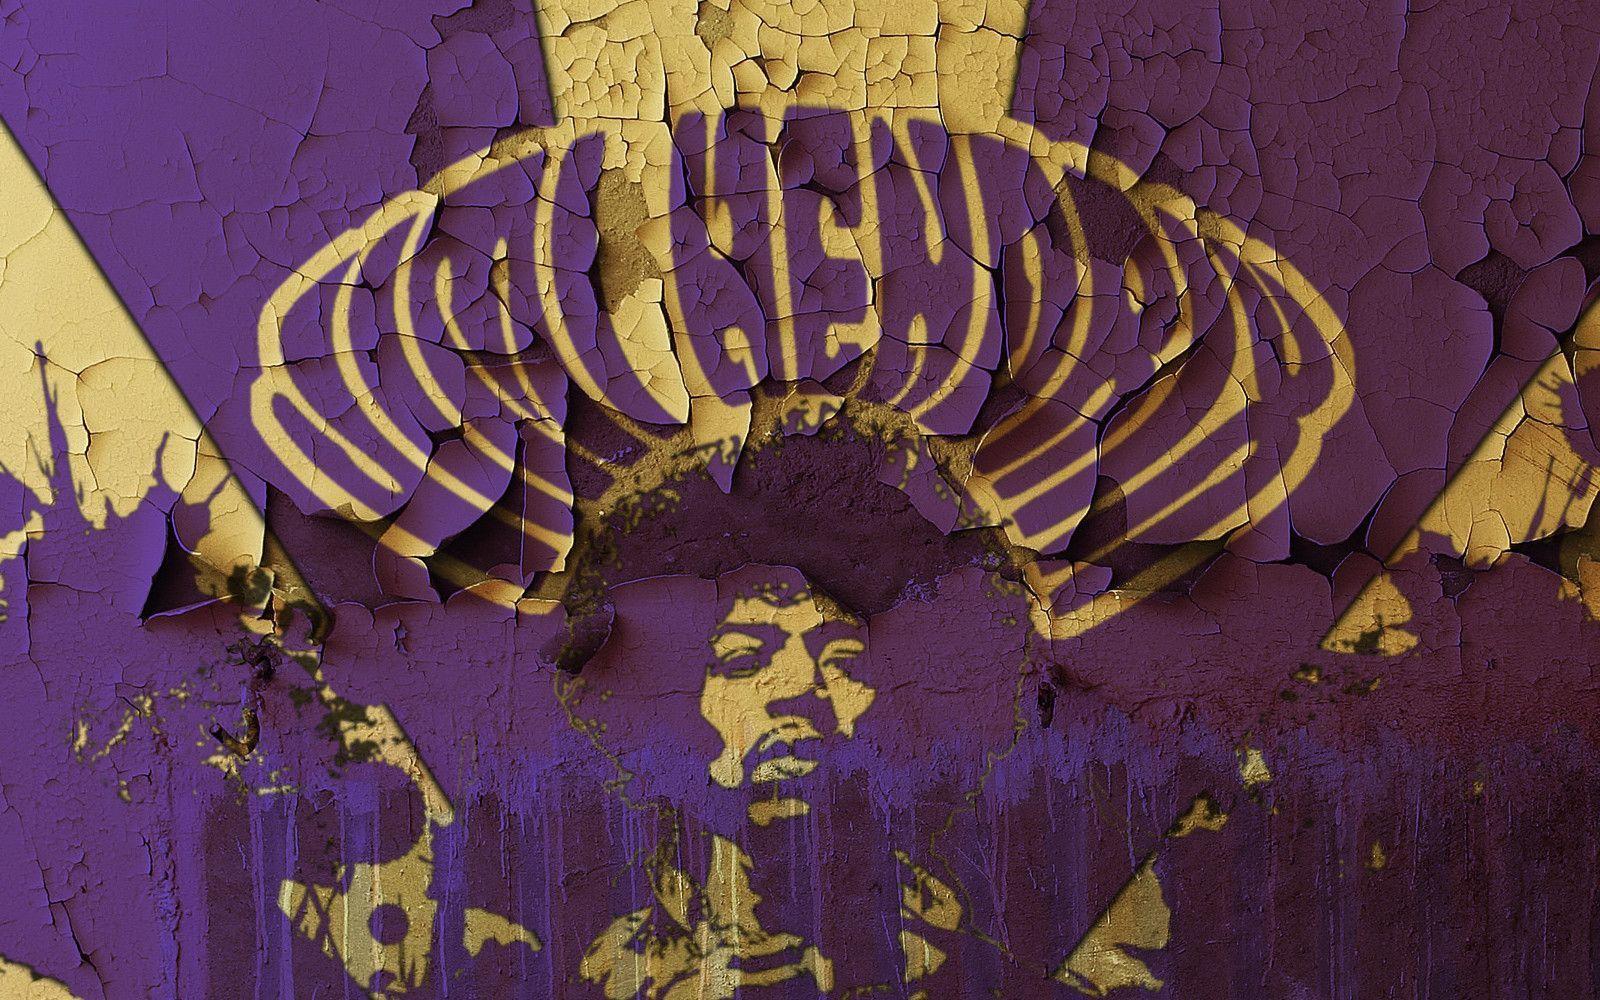 Jimi Hendrix HD Wallpaperx1080